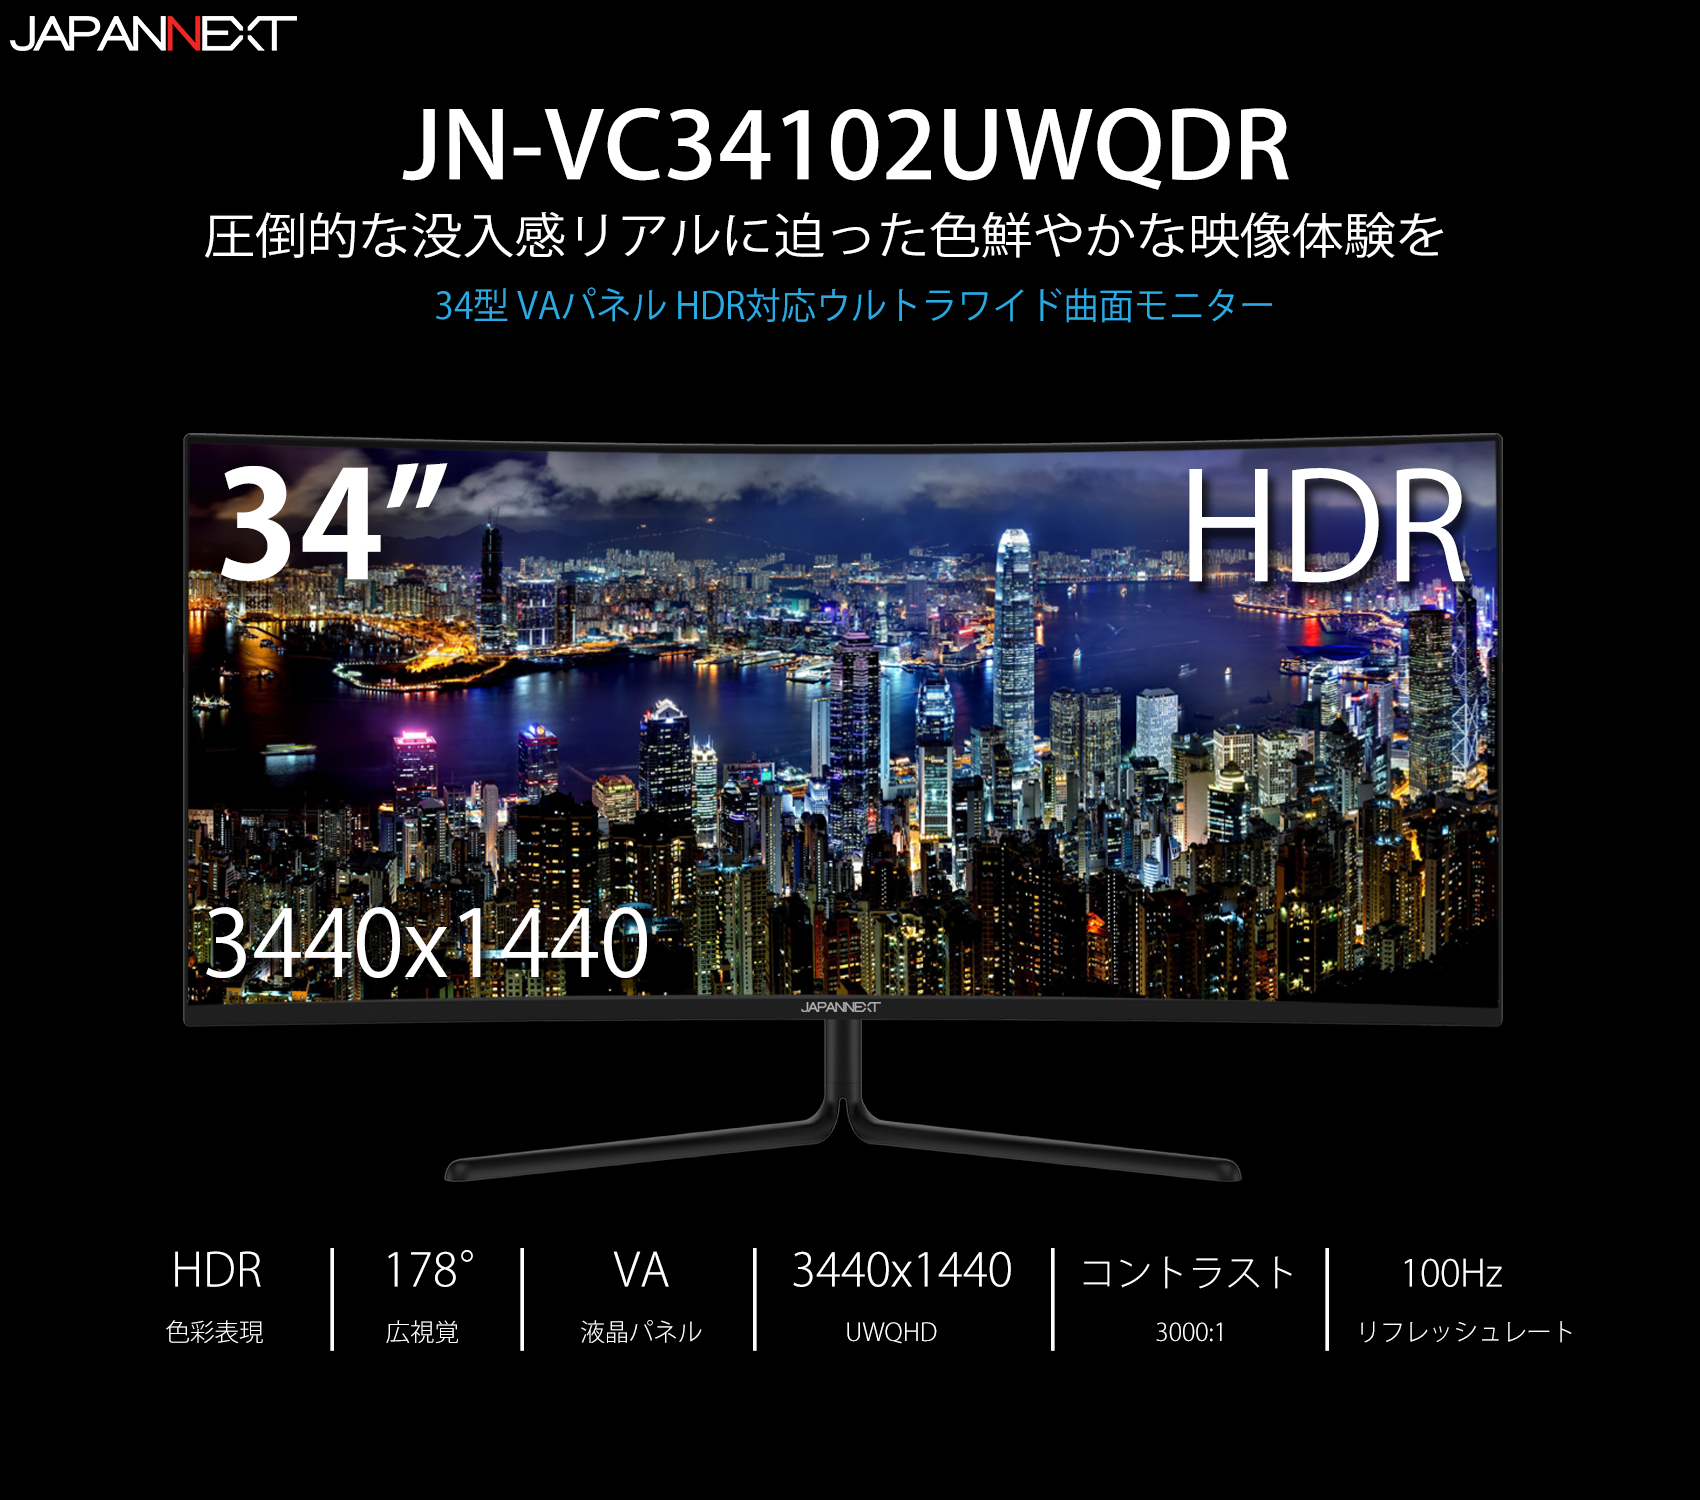 生産終了〉JAPANNEXT JN-VC34102UWQHDR ゲーミング曲面モニター HDR 